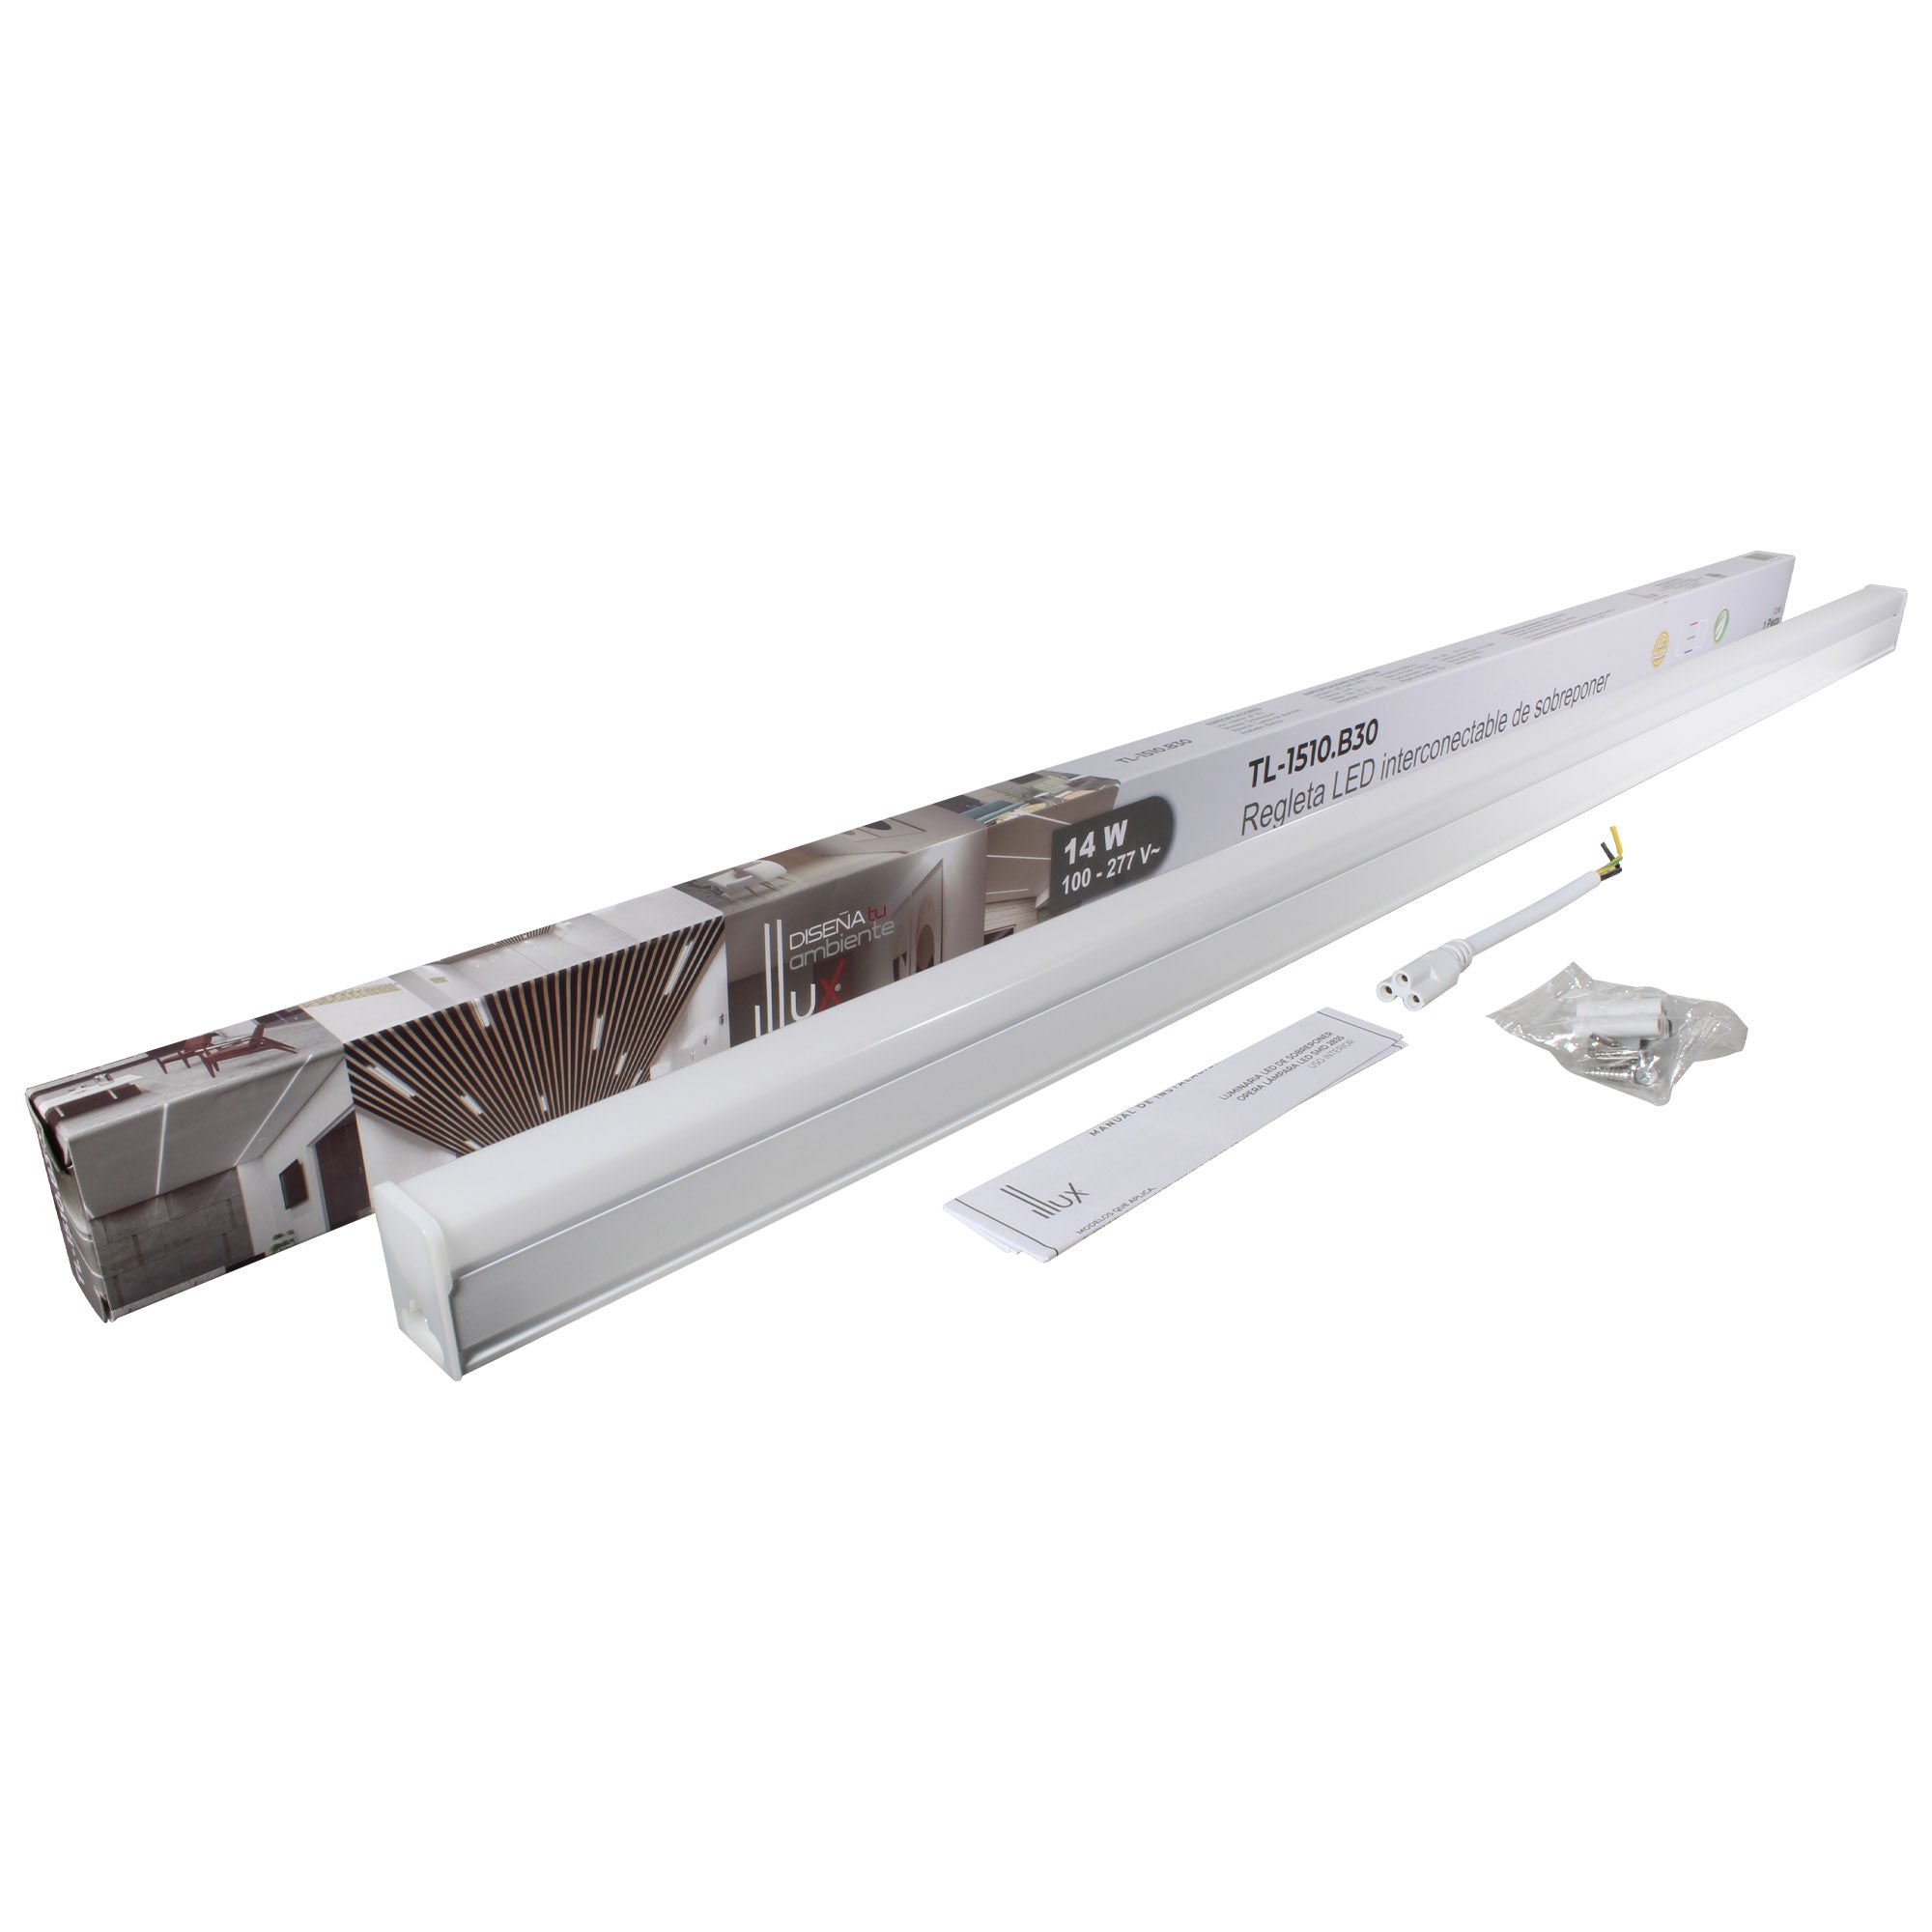 Lámpara Illux LED estilo regleta de sobreponer en techo blanco interconectable 14 W, TL-1510.B